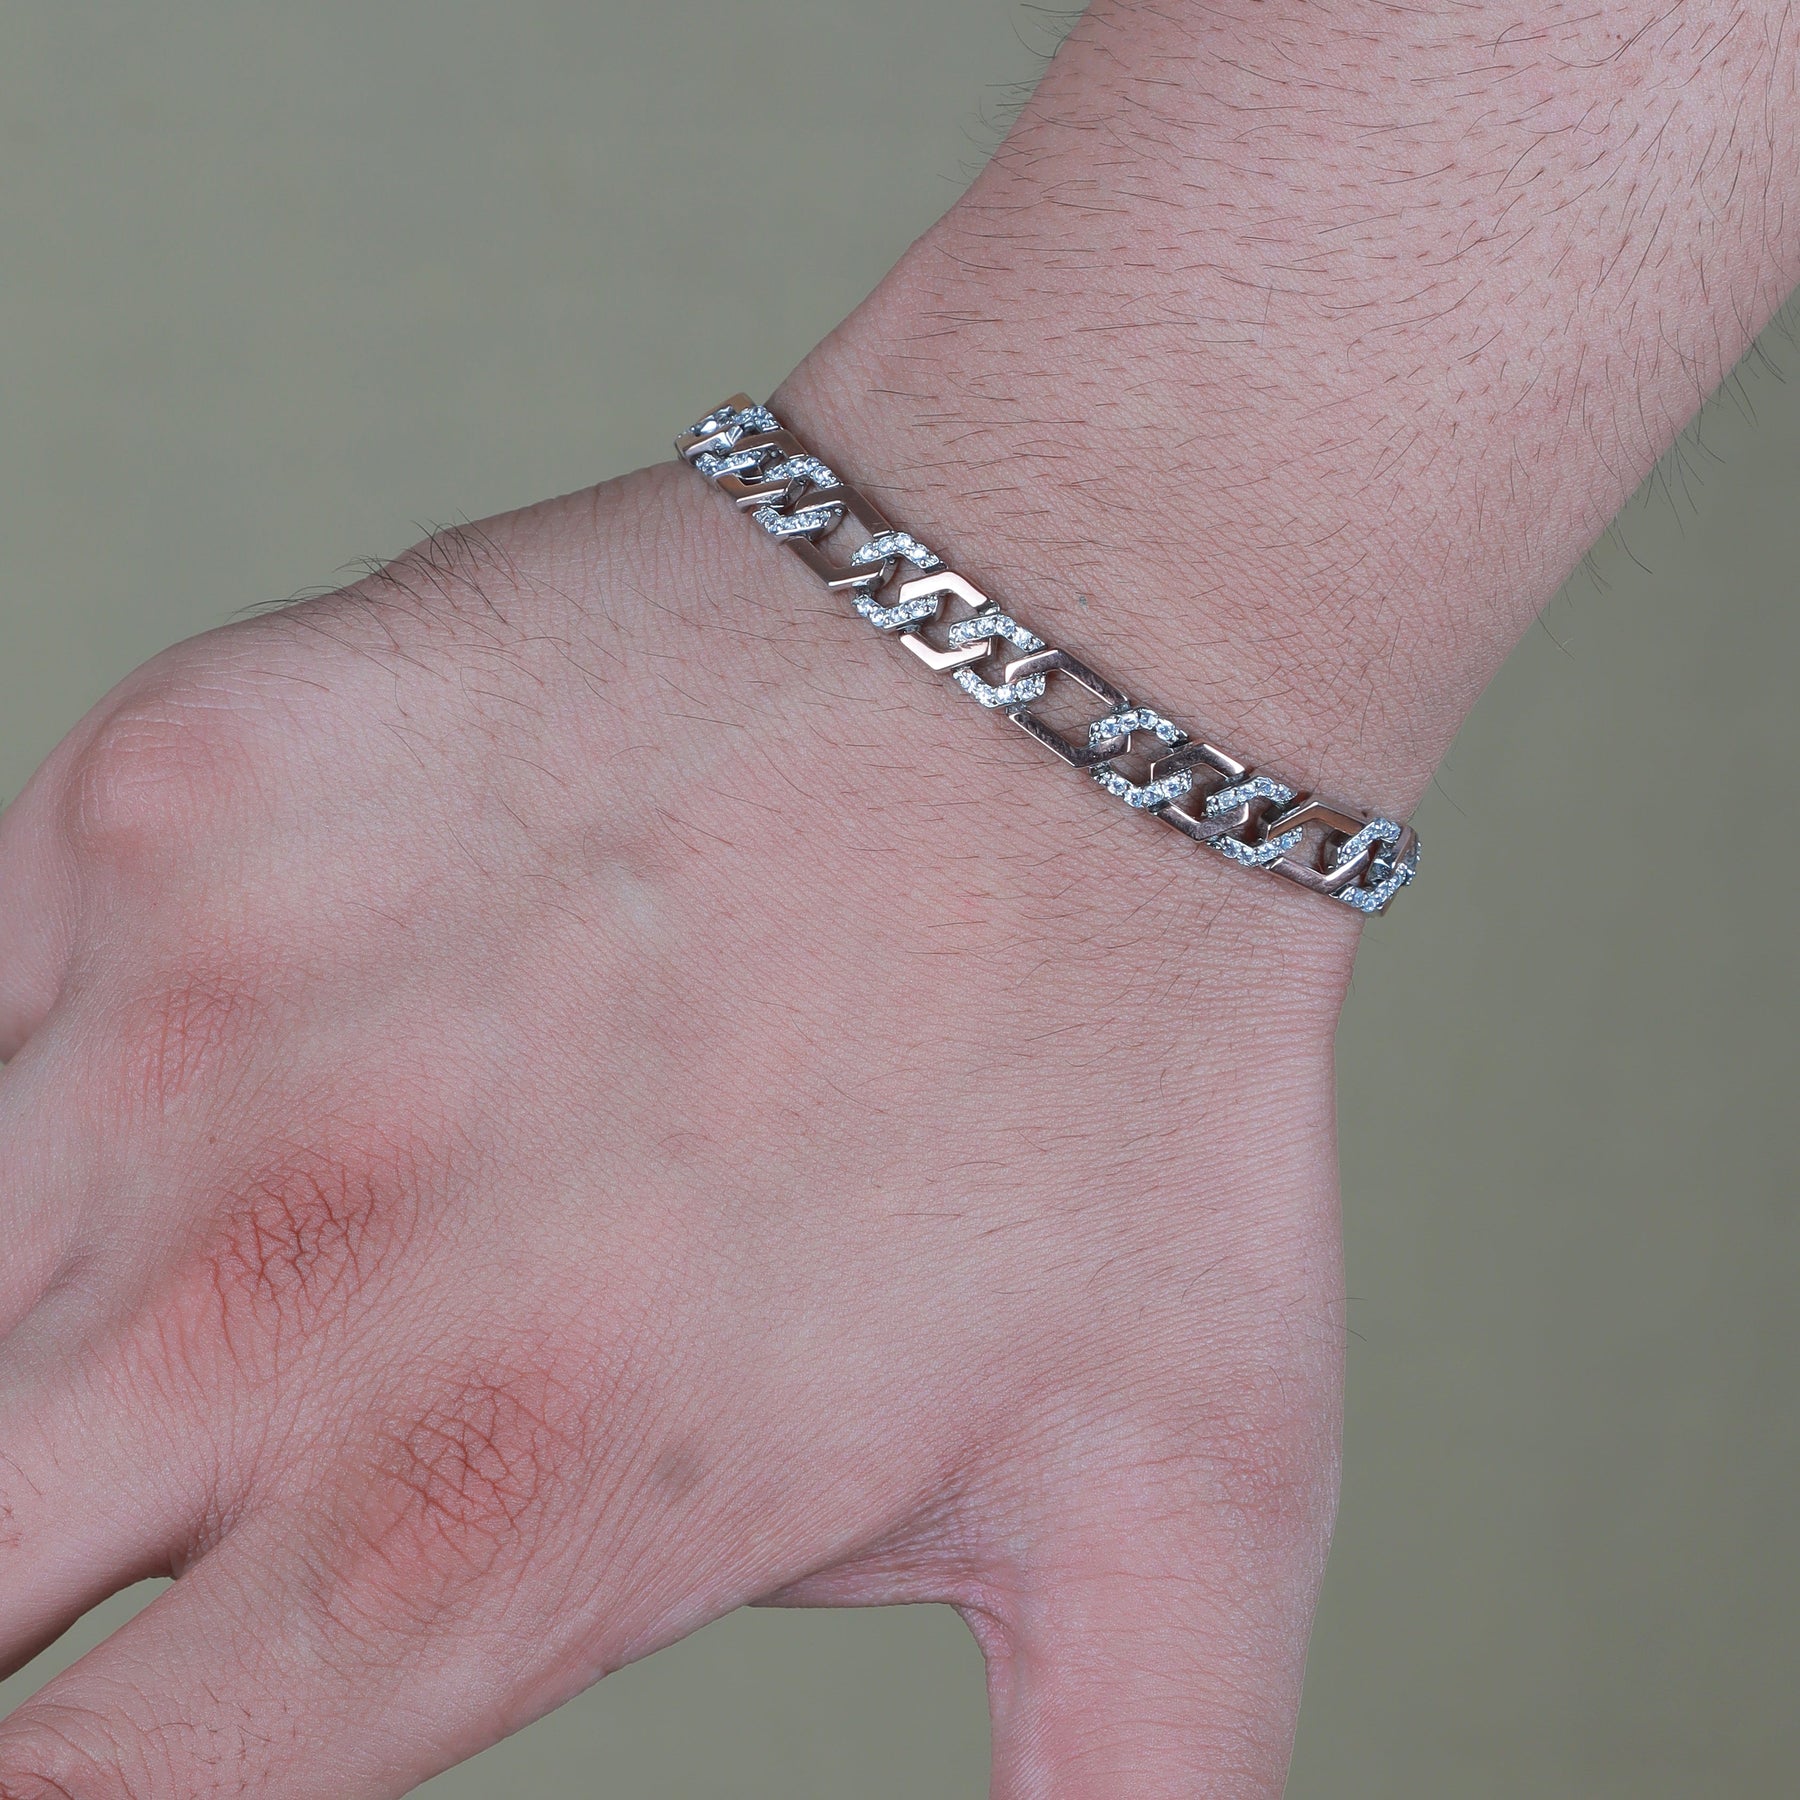 Here's a twist women bracelet